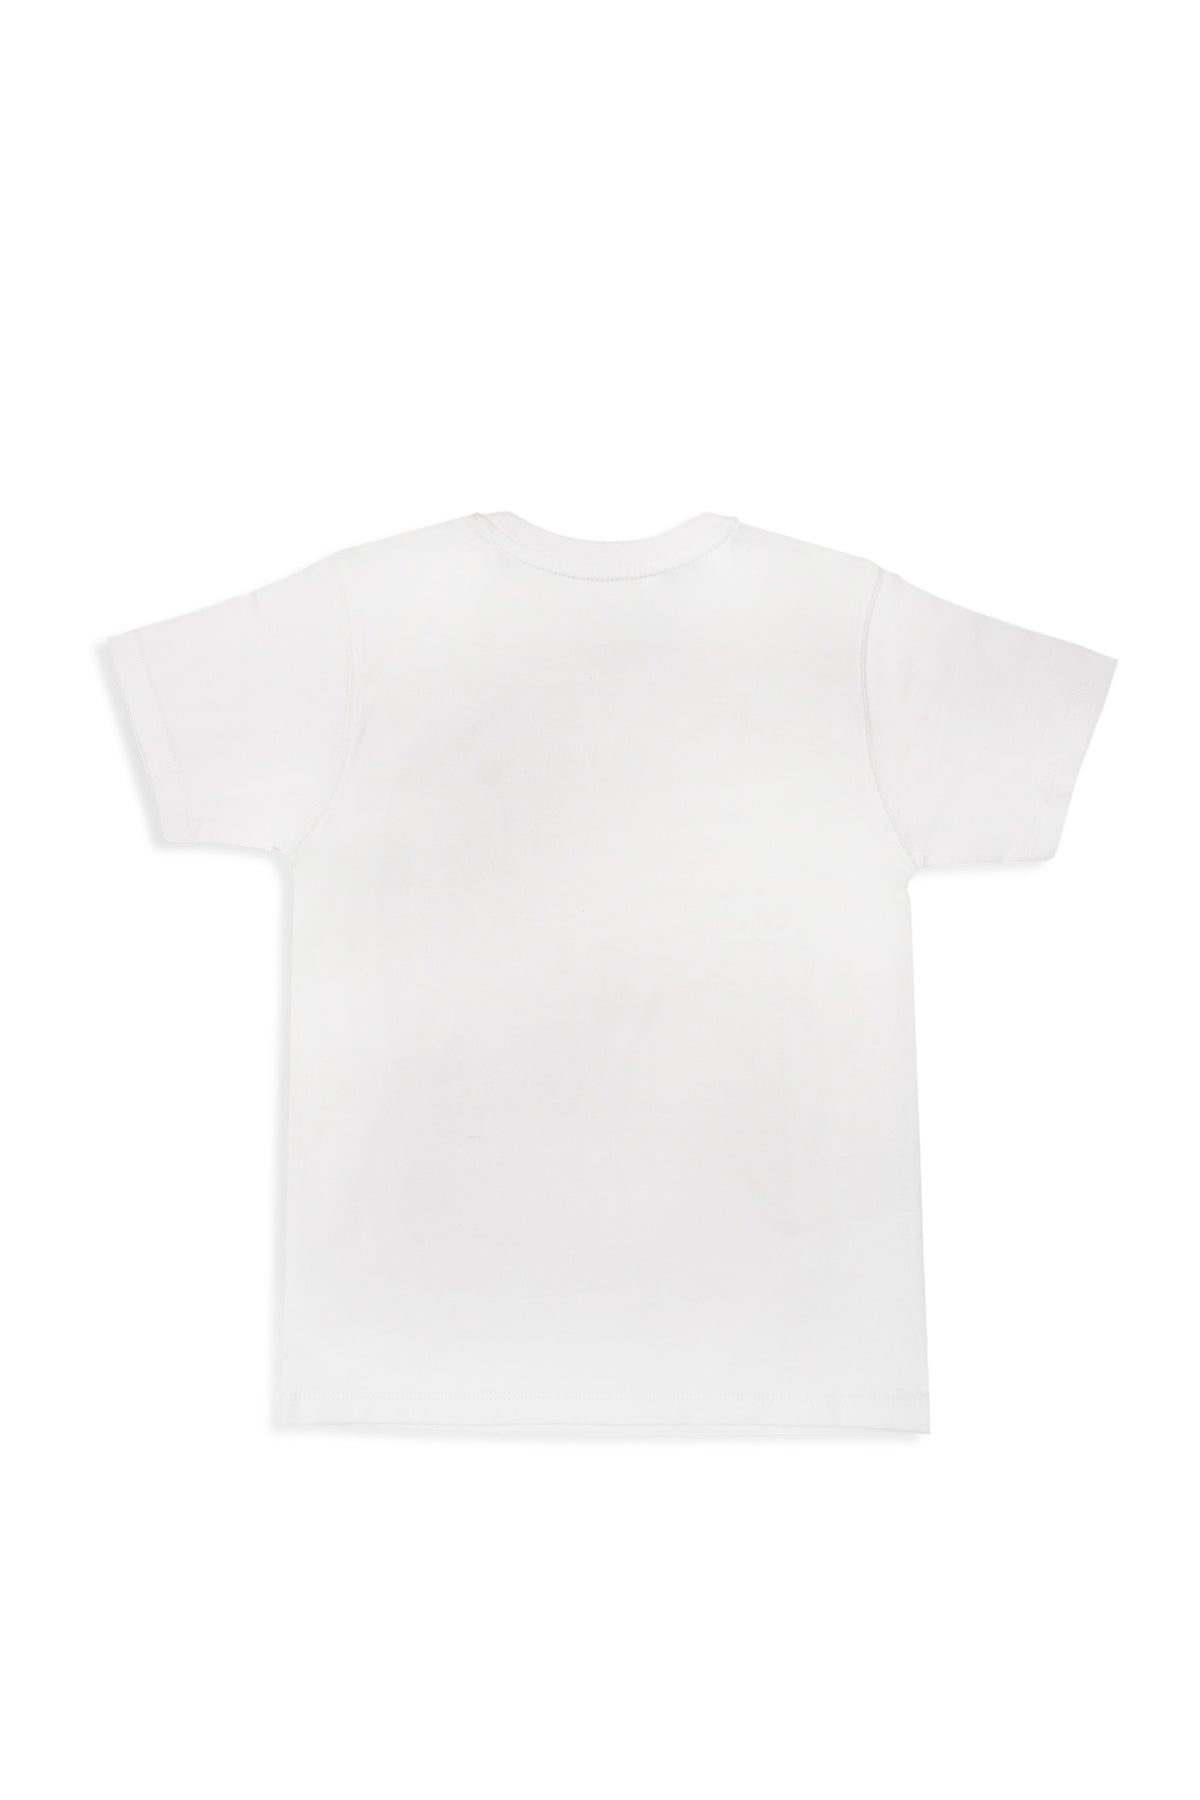 T-Shirt (MSBTB-019)